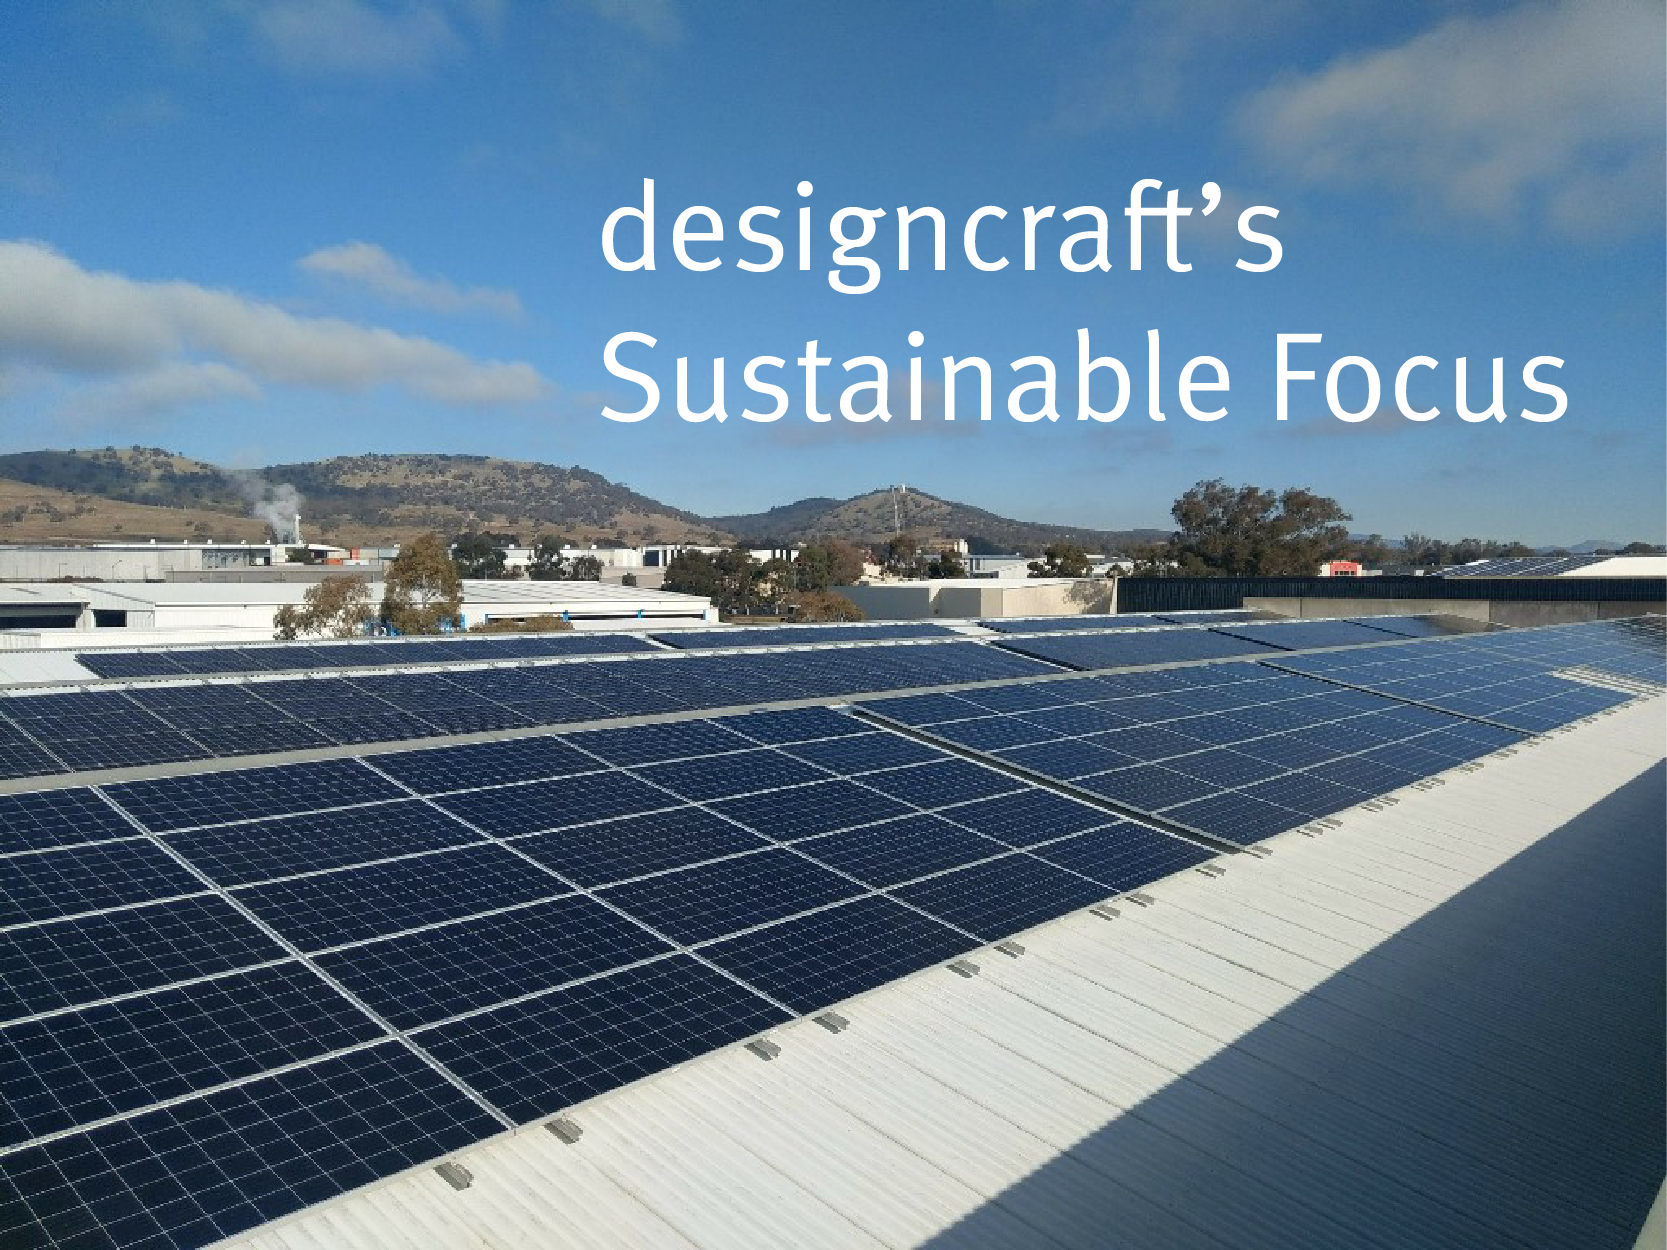 Designcraft's sustainable focus